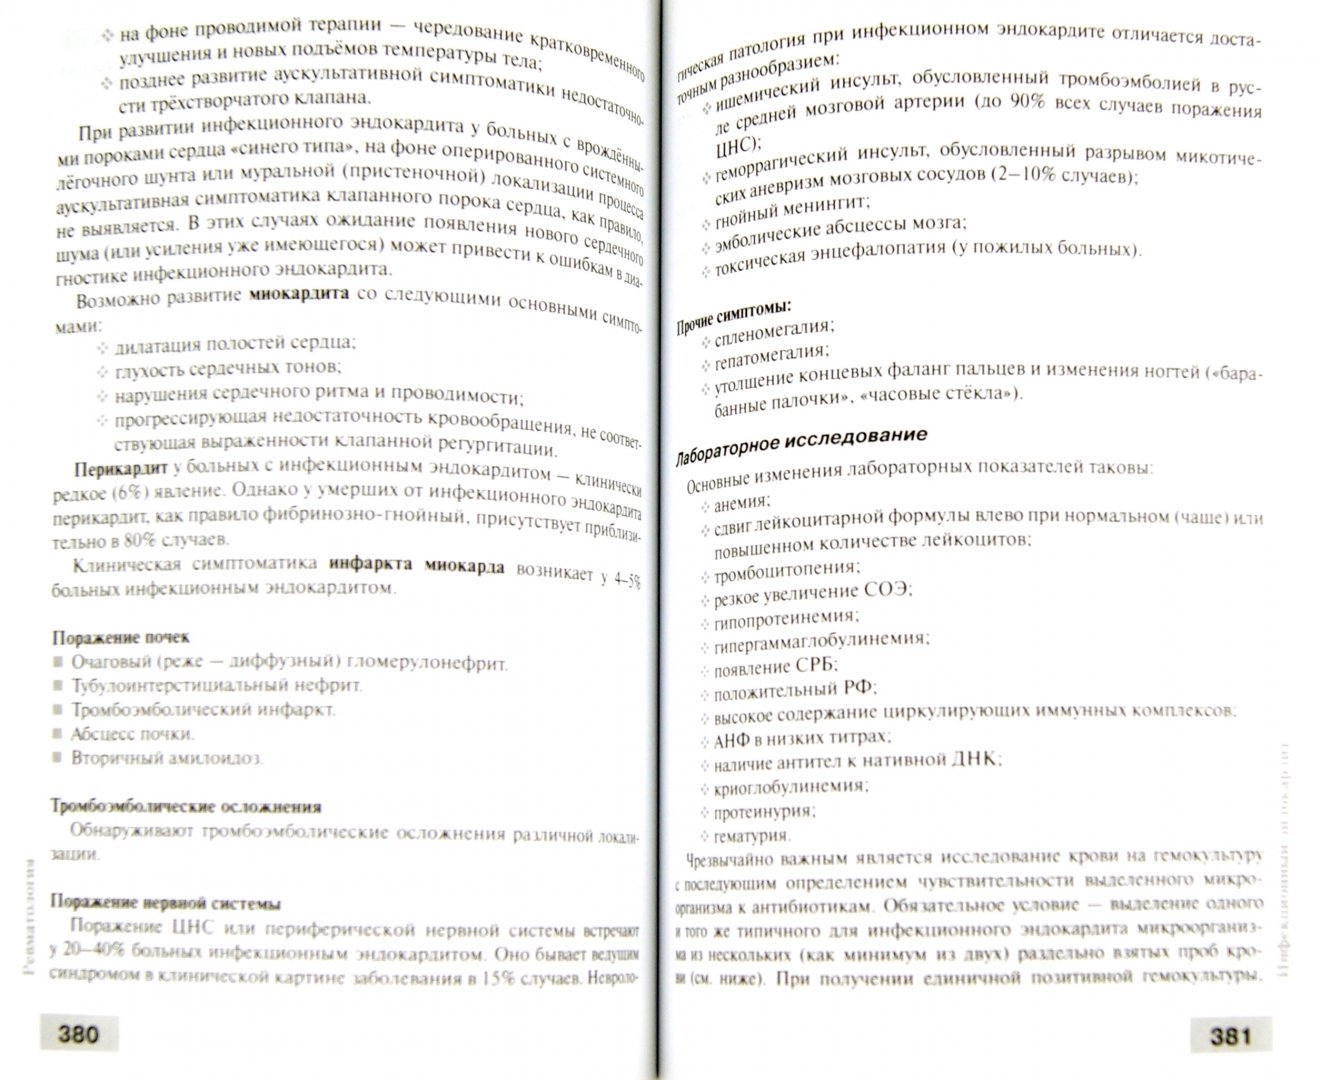 Иллюстрация 1 из 28 для Ревматология: Клинические рекомендации | Лабиринт - книги. Источник: Лабиринт